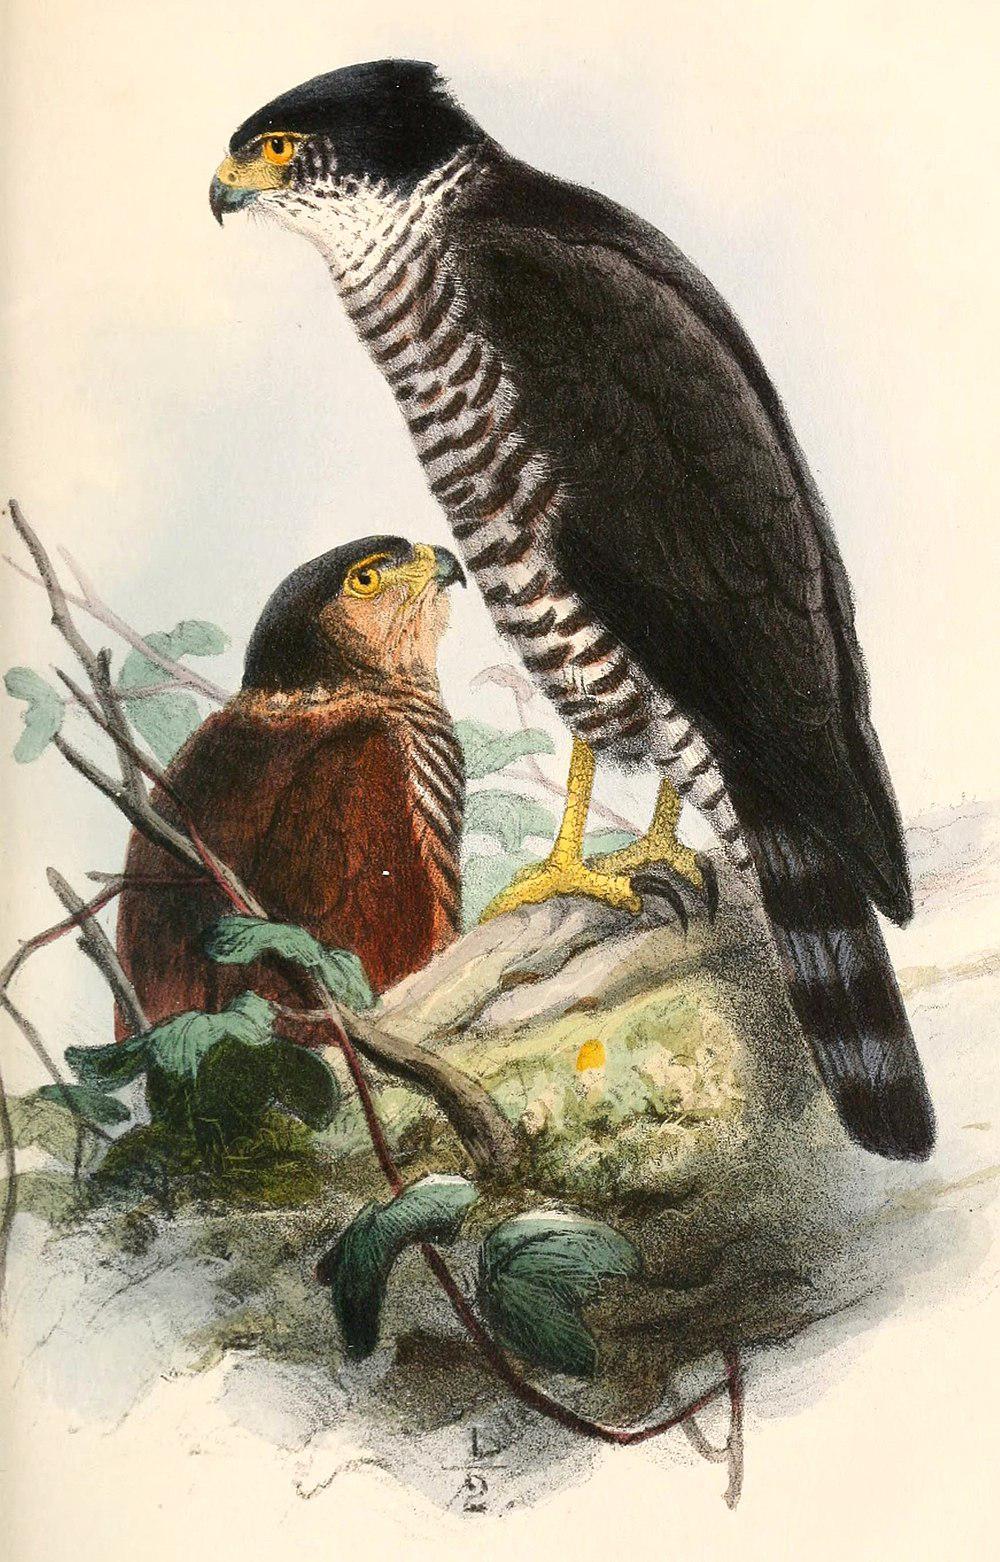 半领鹰 / Semicollared Hawk / Accipiter collaris